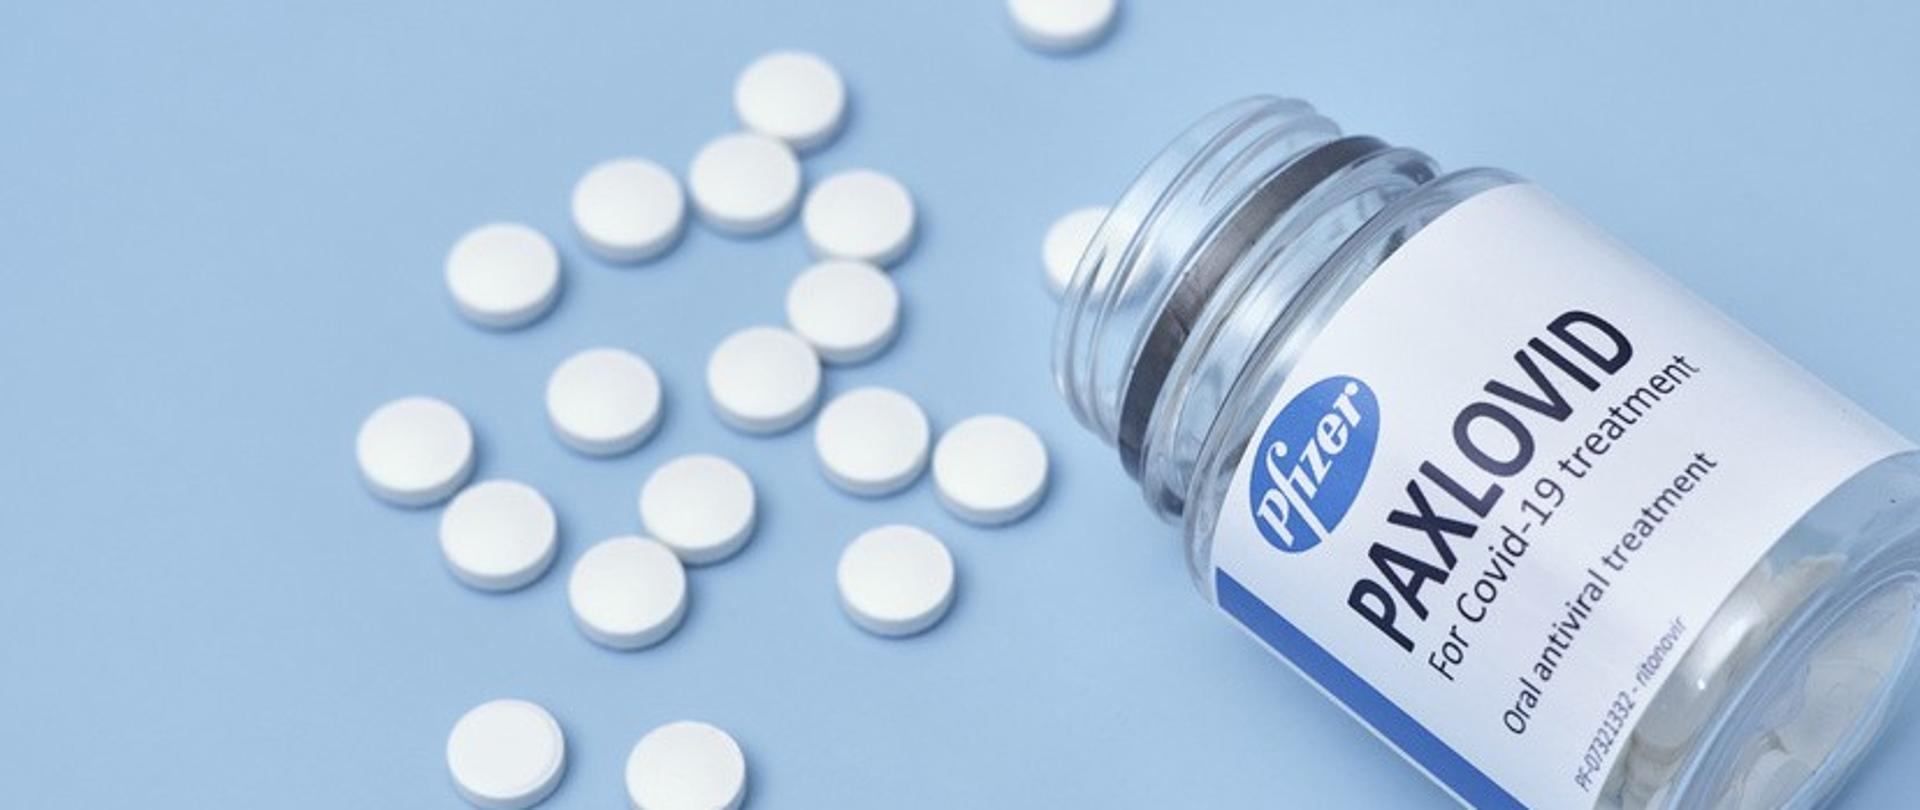 rozsypane białe, okrągłe tabletki oraz słoiczek z napisem paxlovid na jasnoniebieskim tle